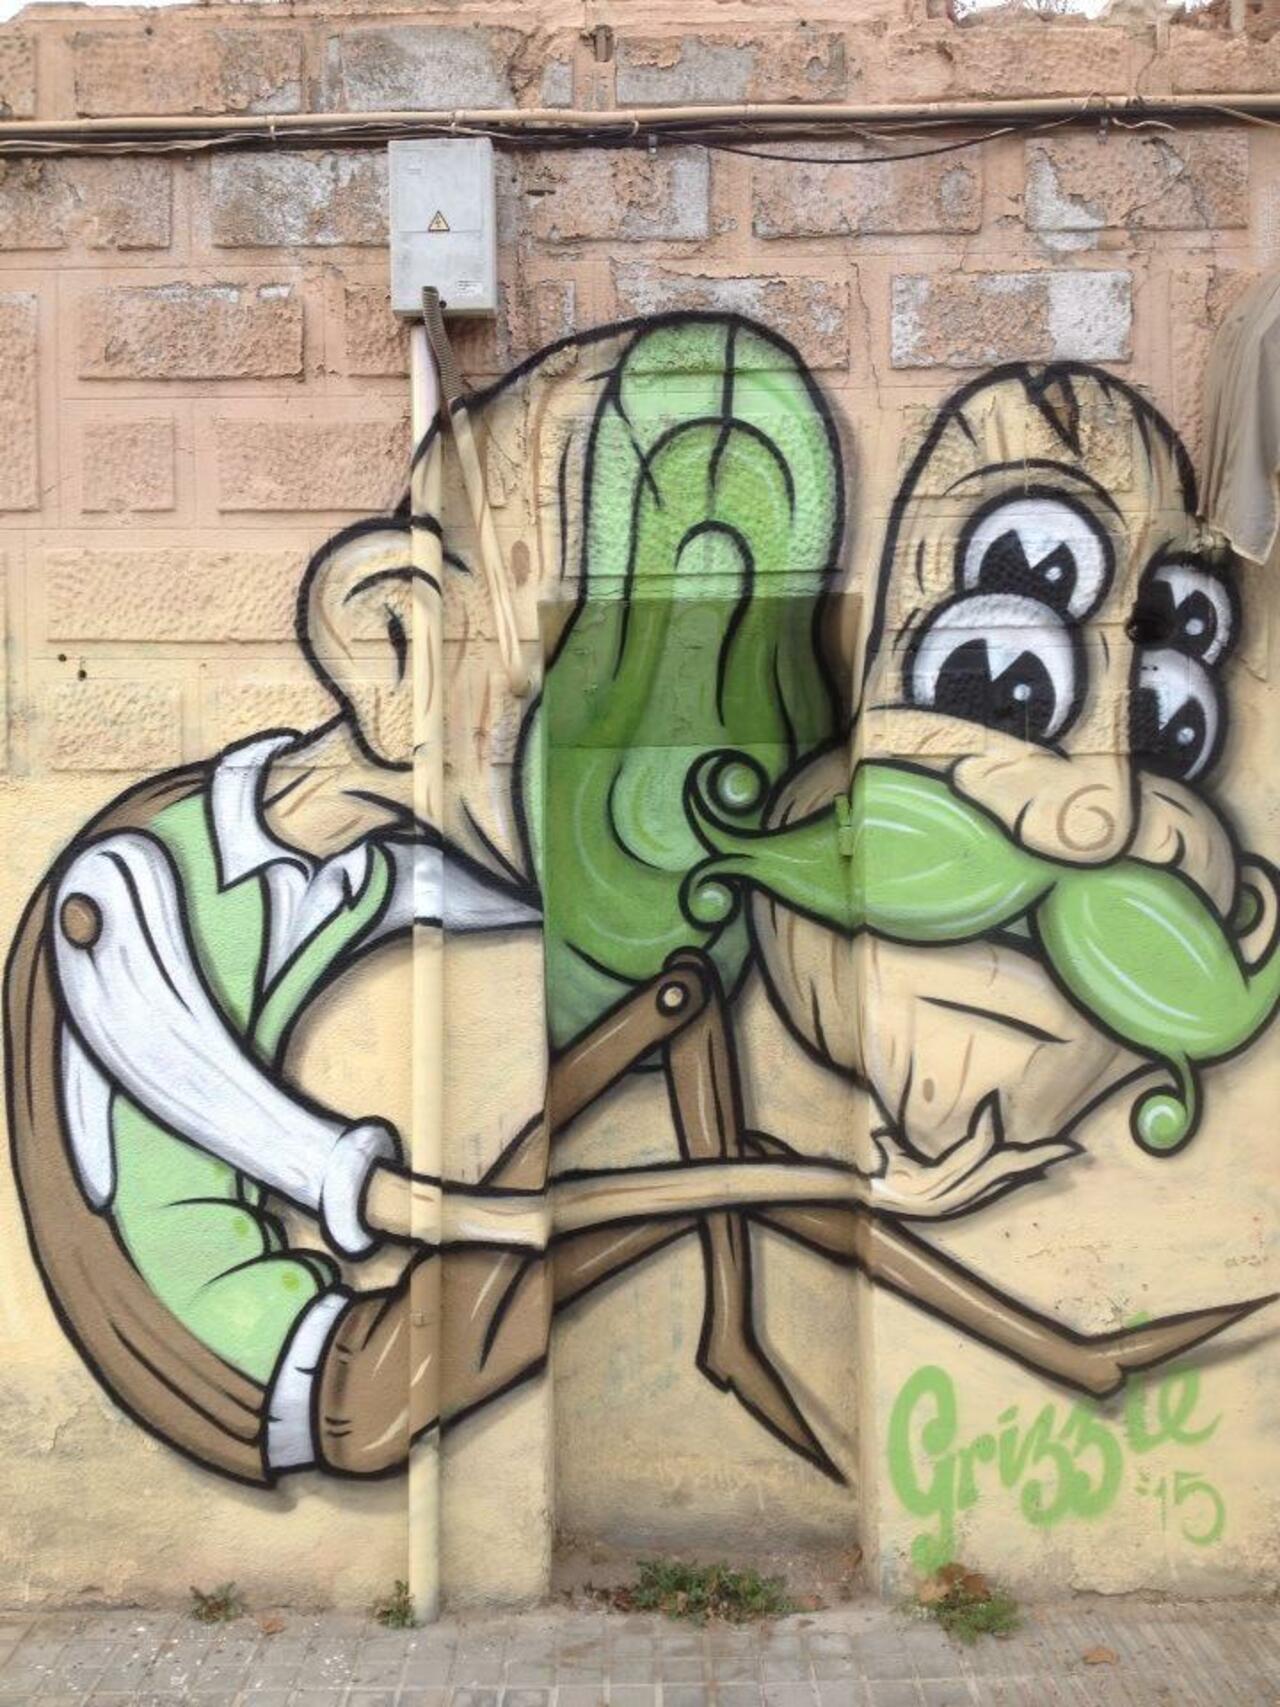 “@streetartgall: Face man! #graffiti #mural #SAG http://t.co/FHUvjXwDFG”